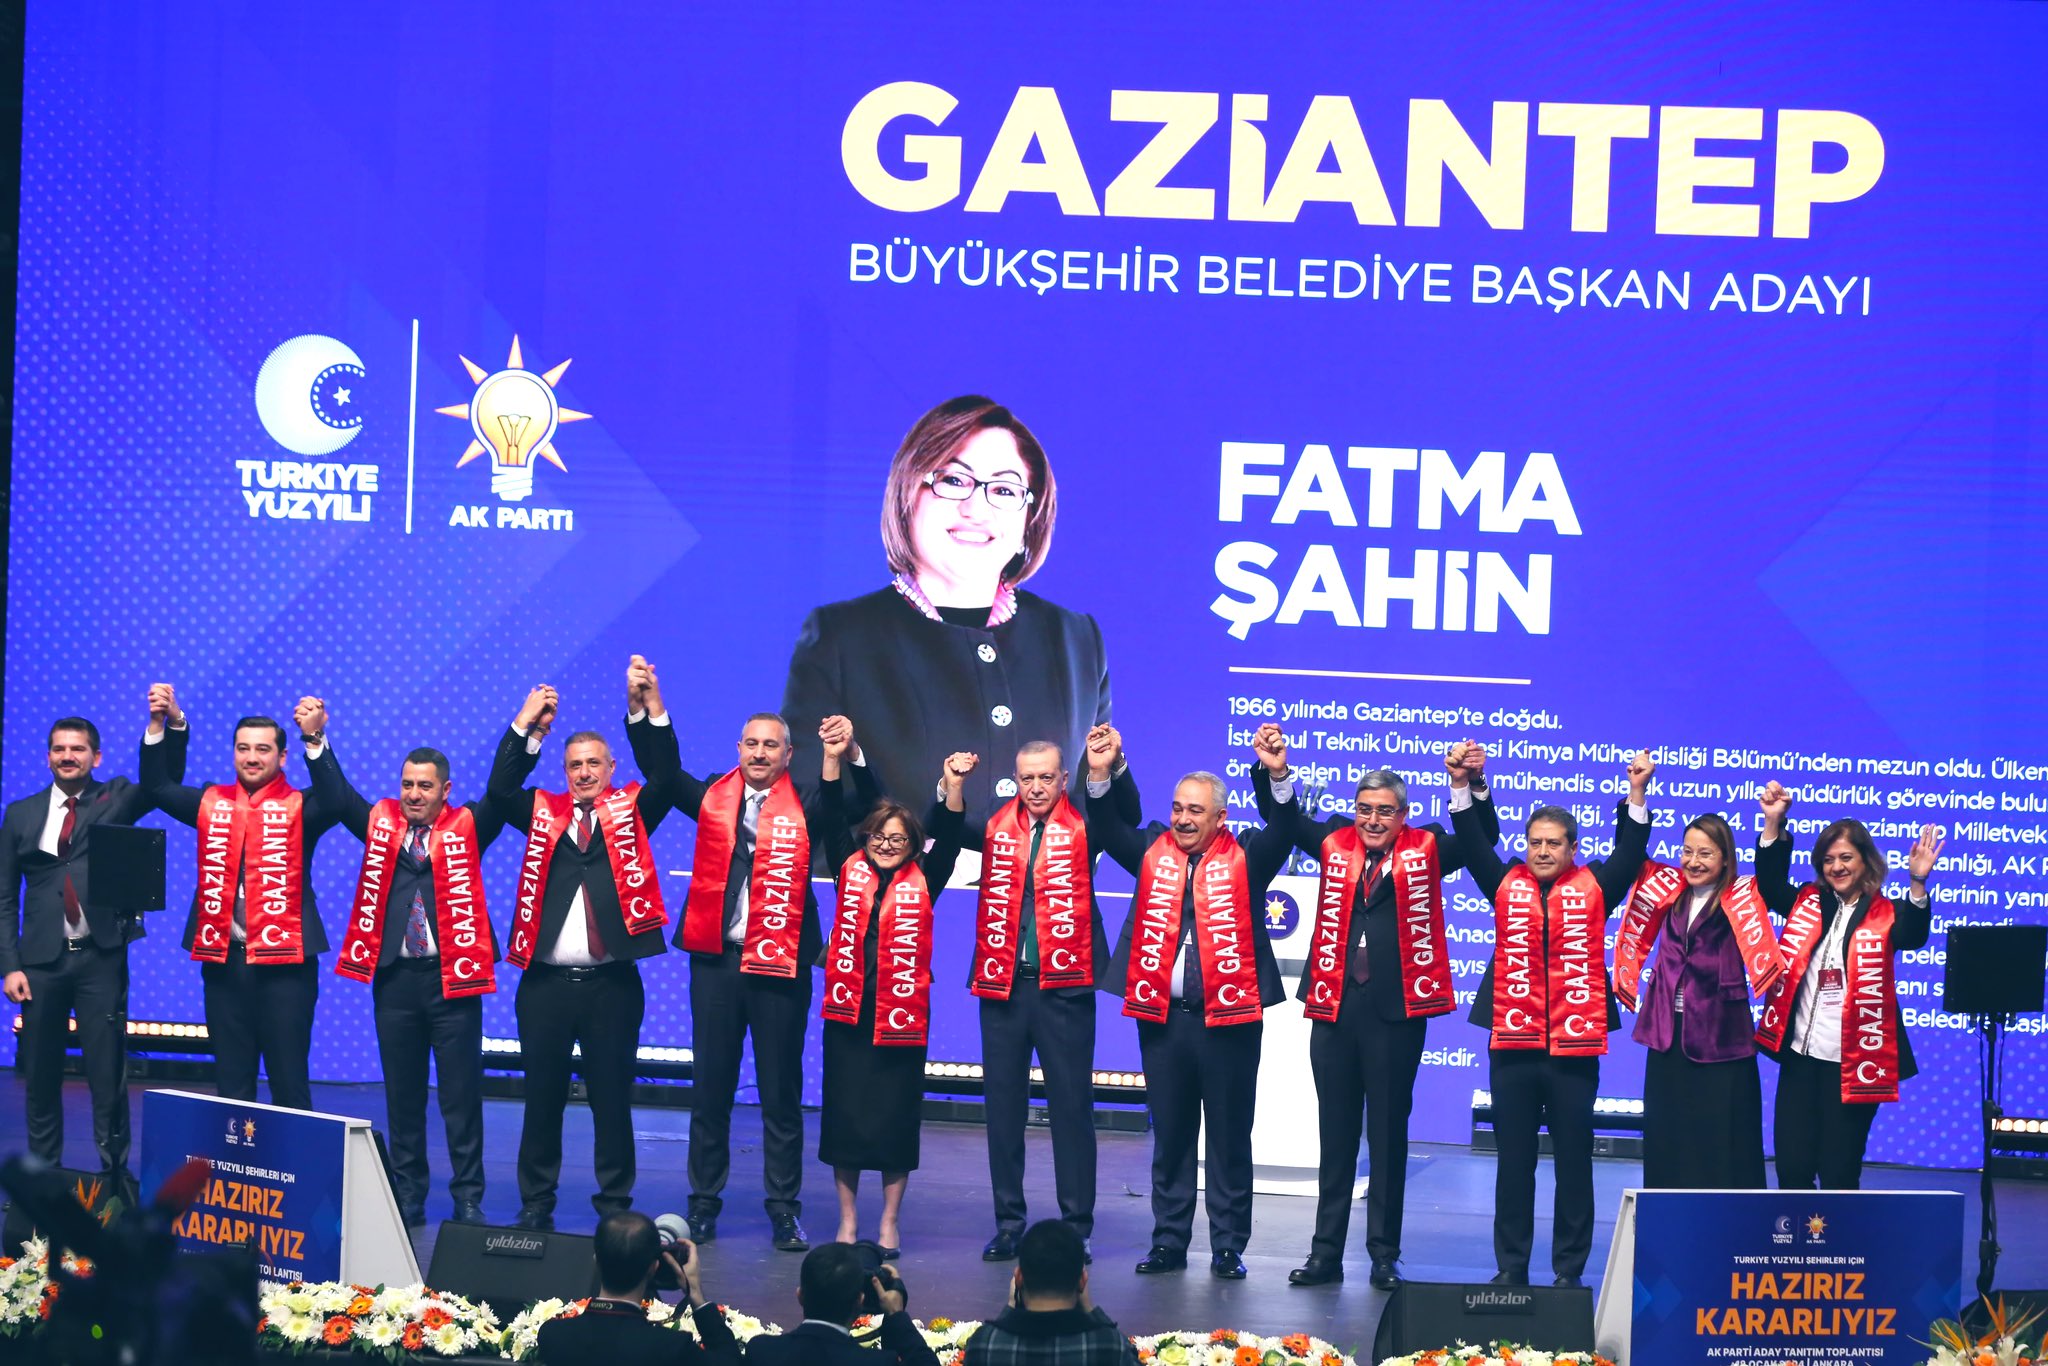  Fatma Şahin, Gaziantep Büyükşehir Belediye Başkan Adayı